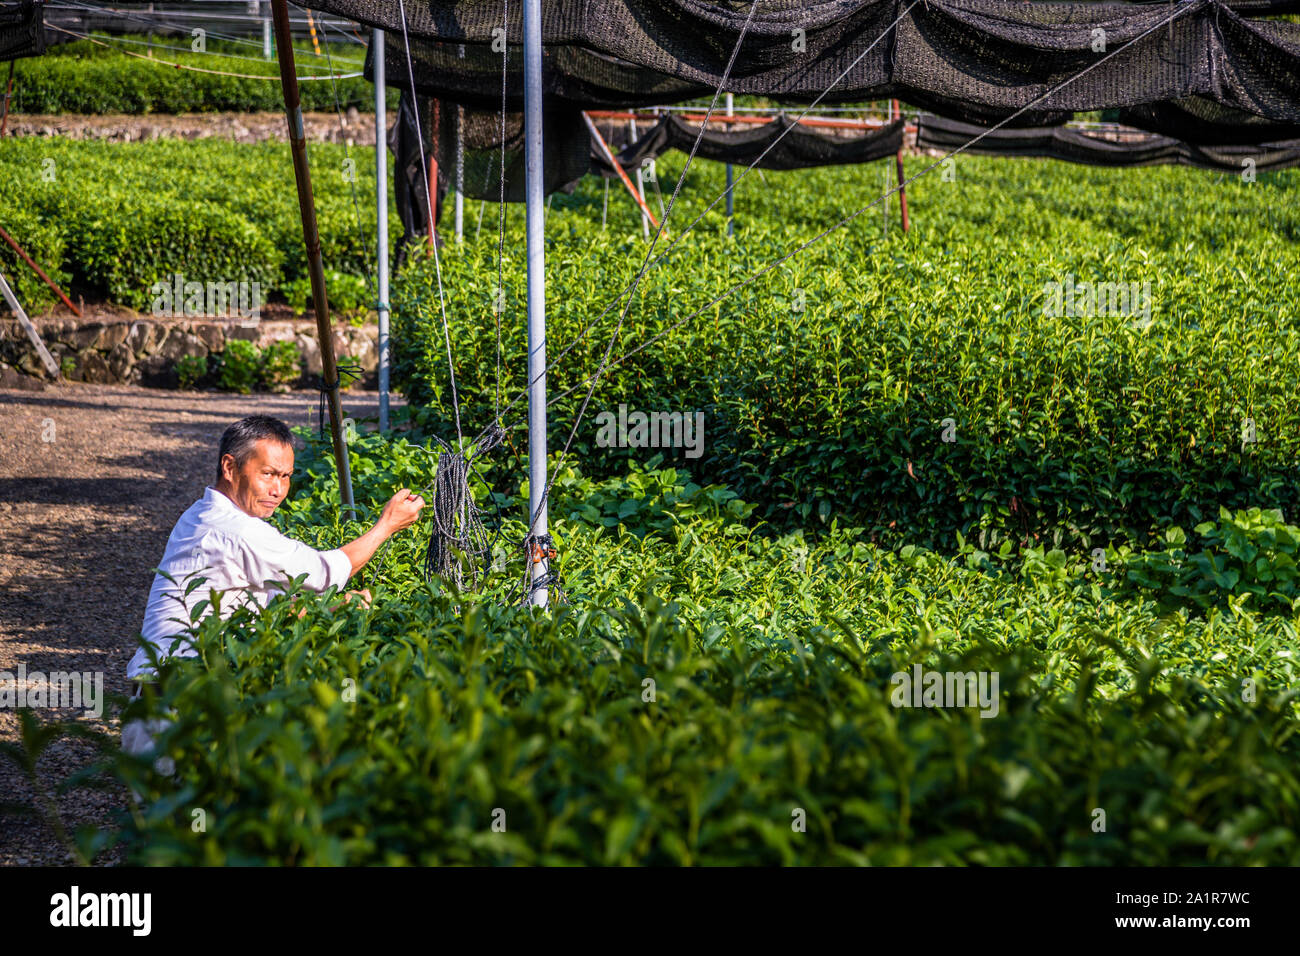 Japanese Green Tea Farm of Shizuoka, Japan Stock Photo